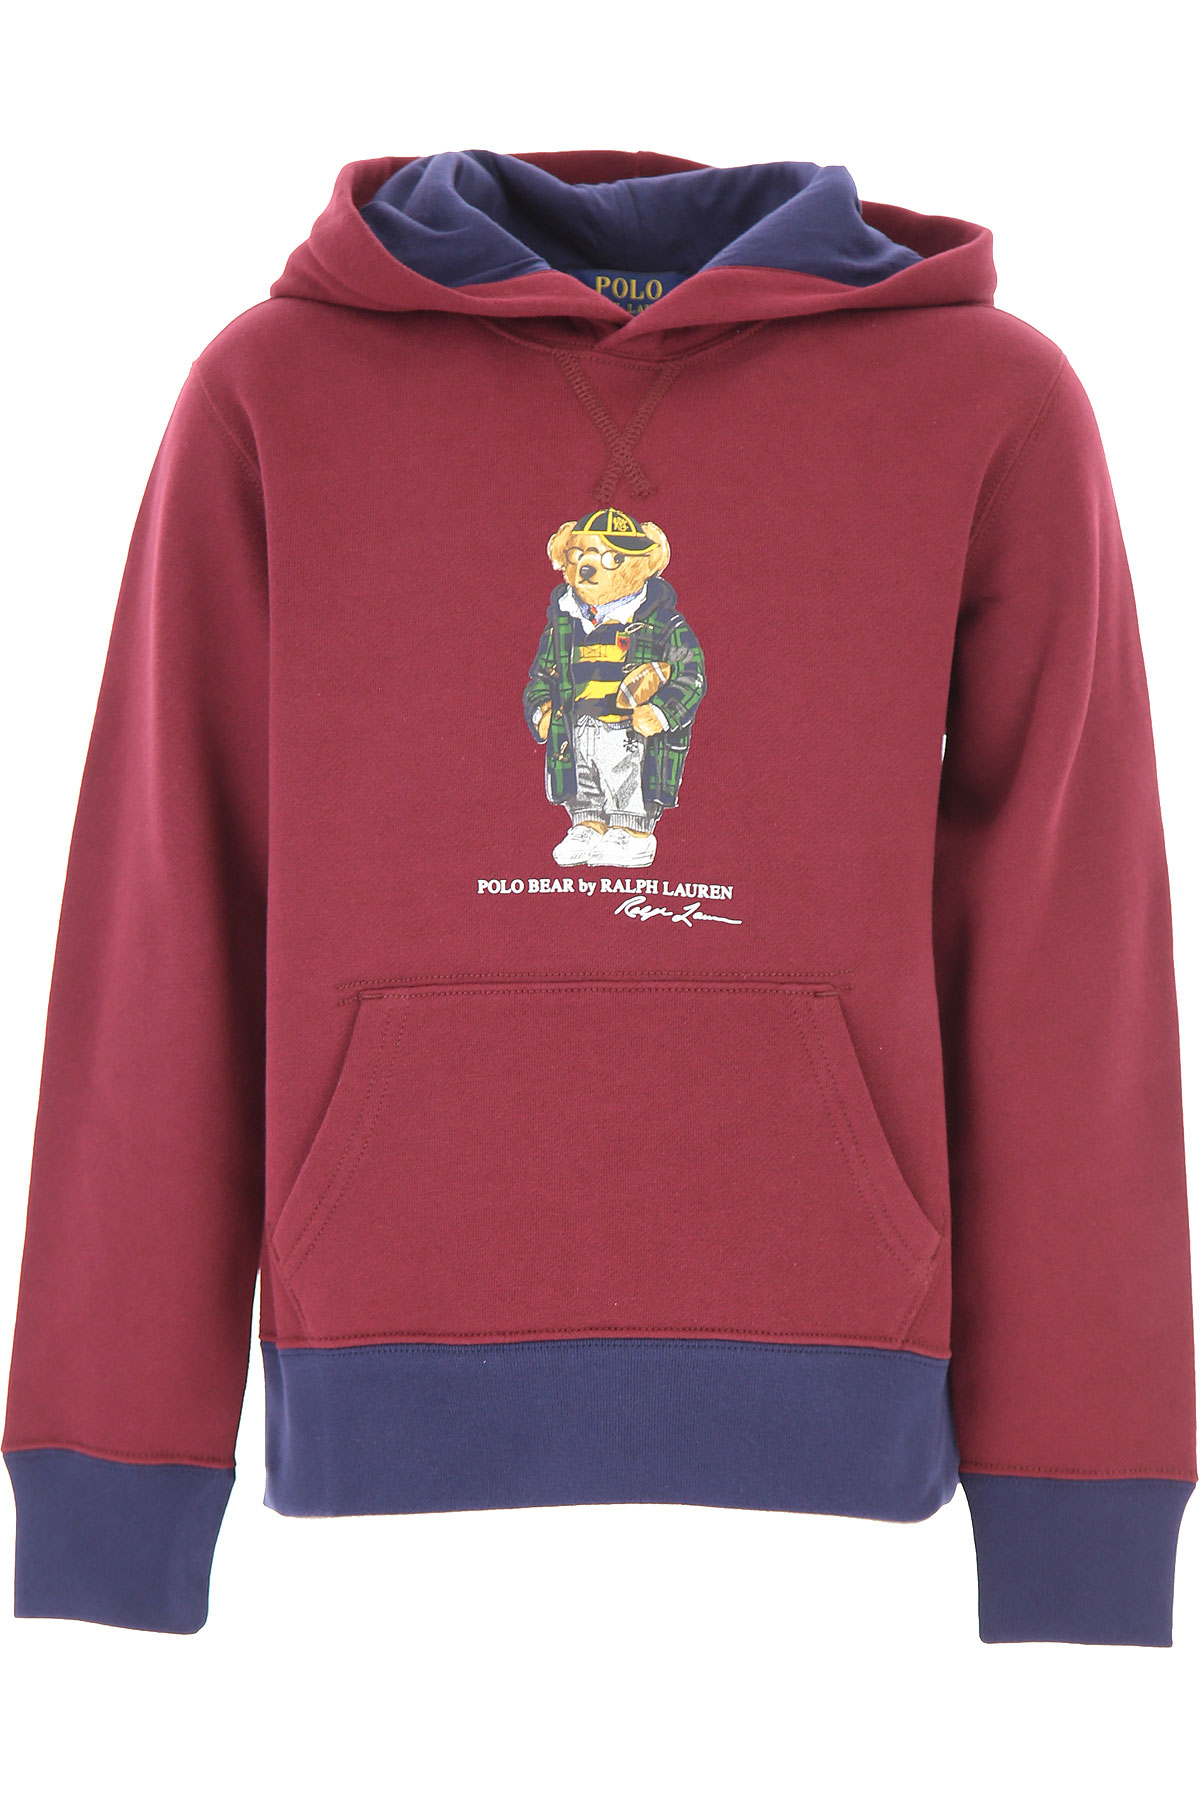 Ralph Lauren Kinder Sweatshirt & Kapuzenpullover für Jungen Günstig im Sale, Bordeauxrot, Baumwolle, 2017, L M